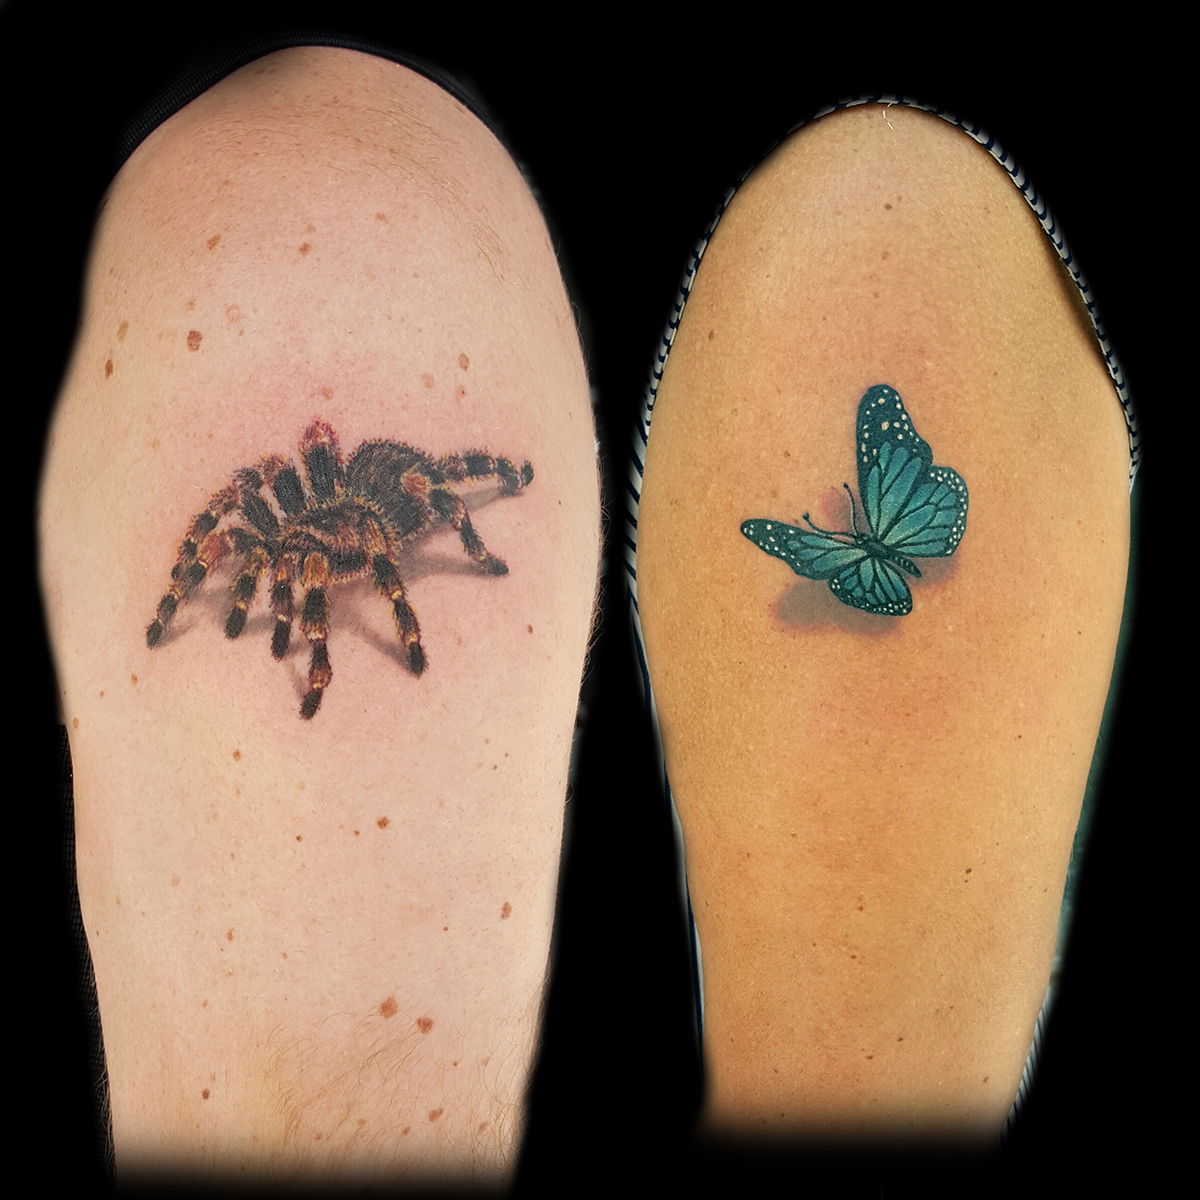 Spider Tattoo 3D - Best Tattoo Ideas Gallery